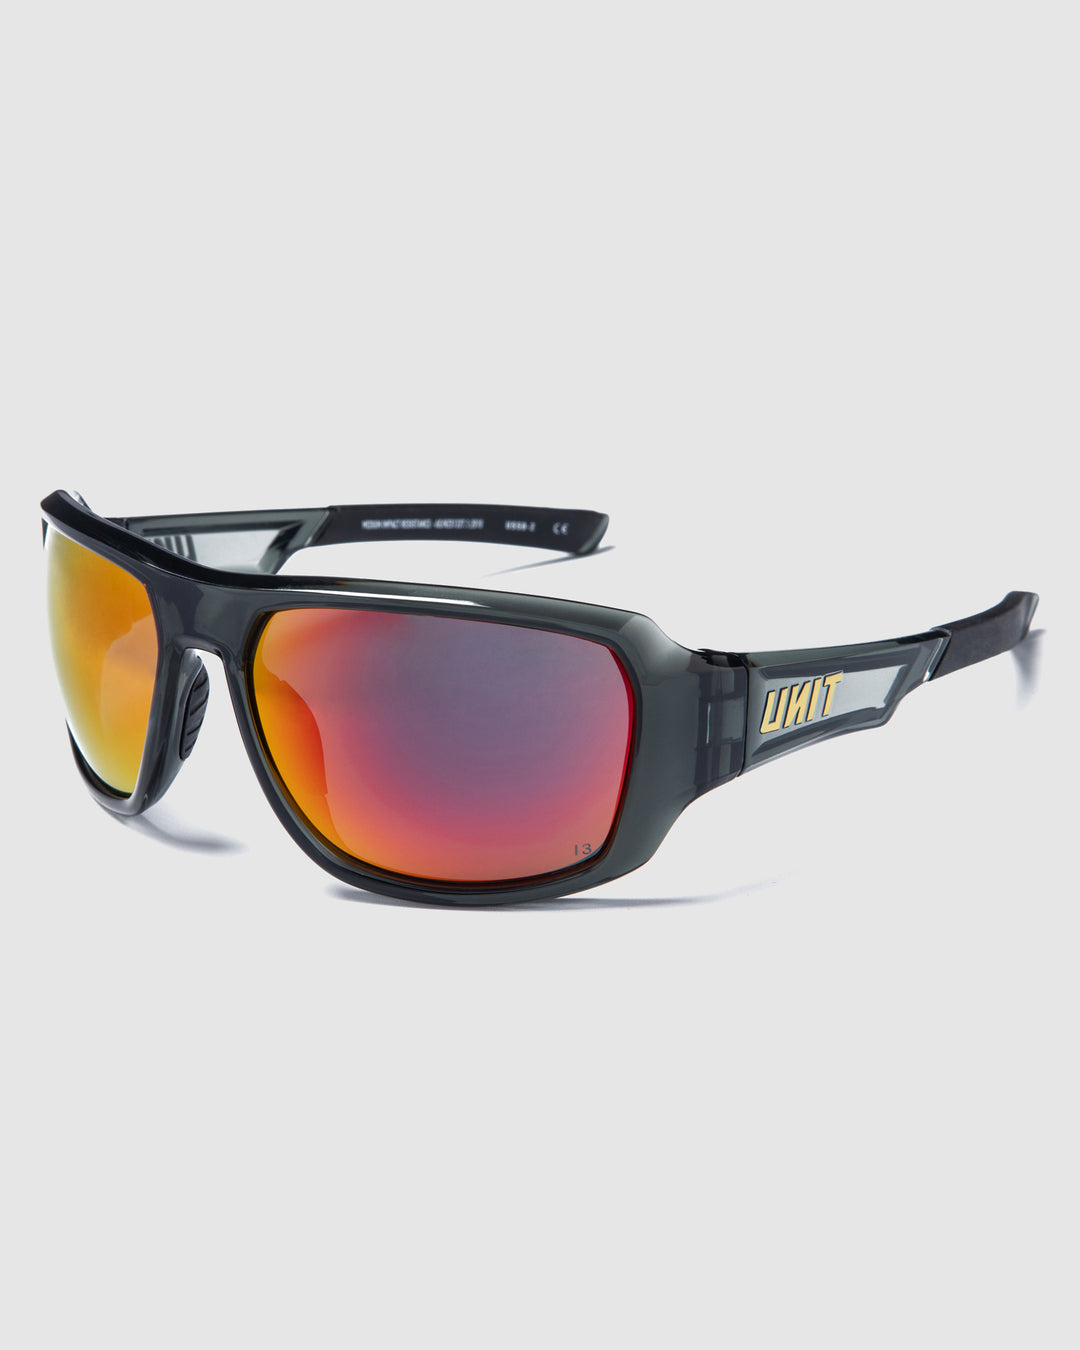 Safety Sunglasses – UNIT Clothing